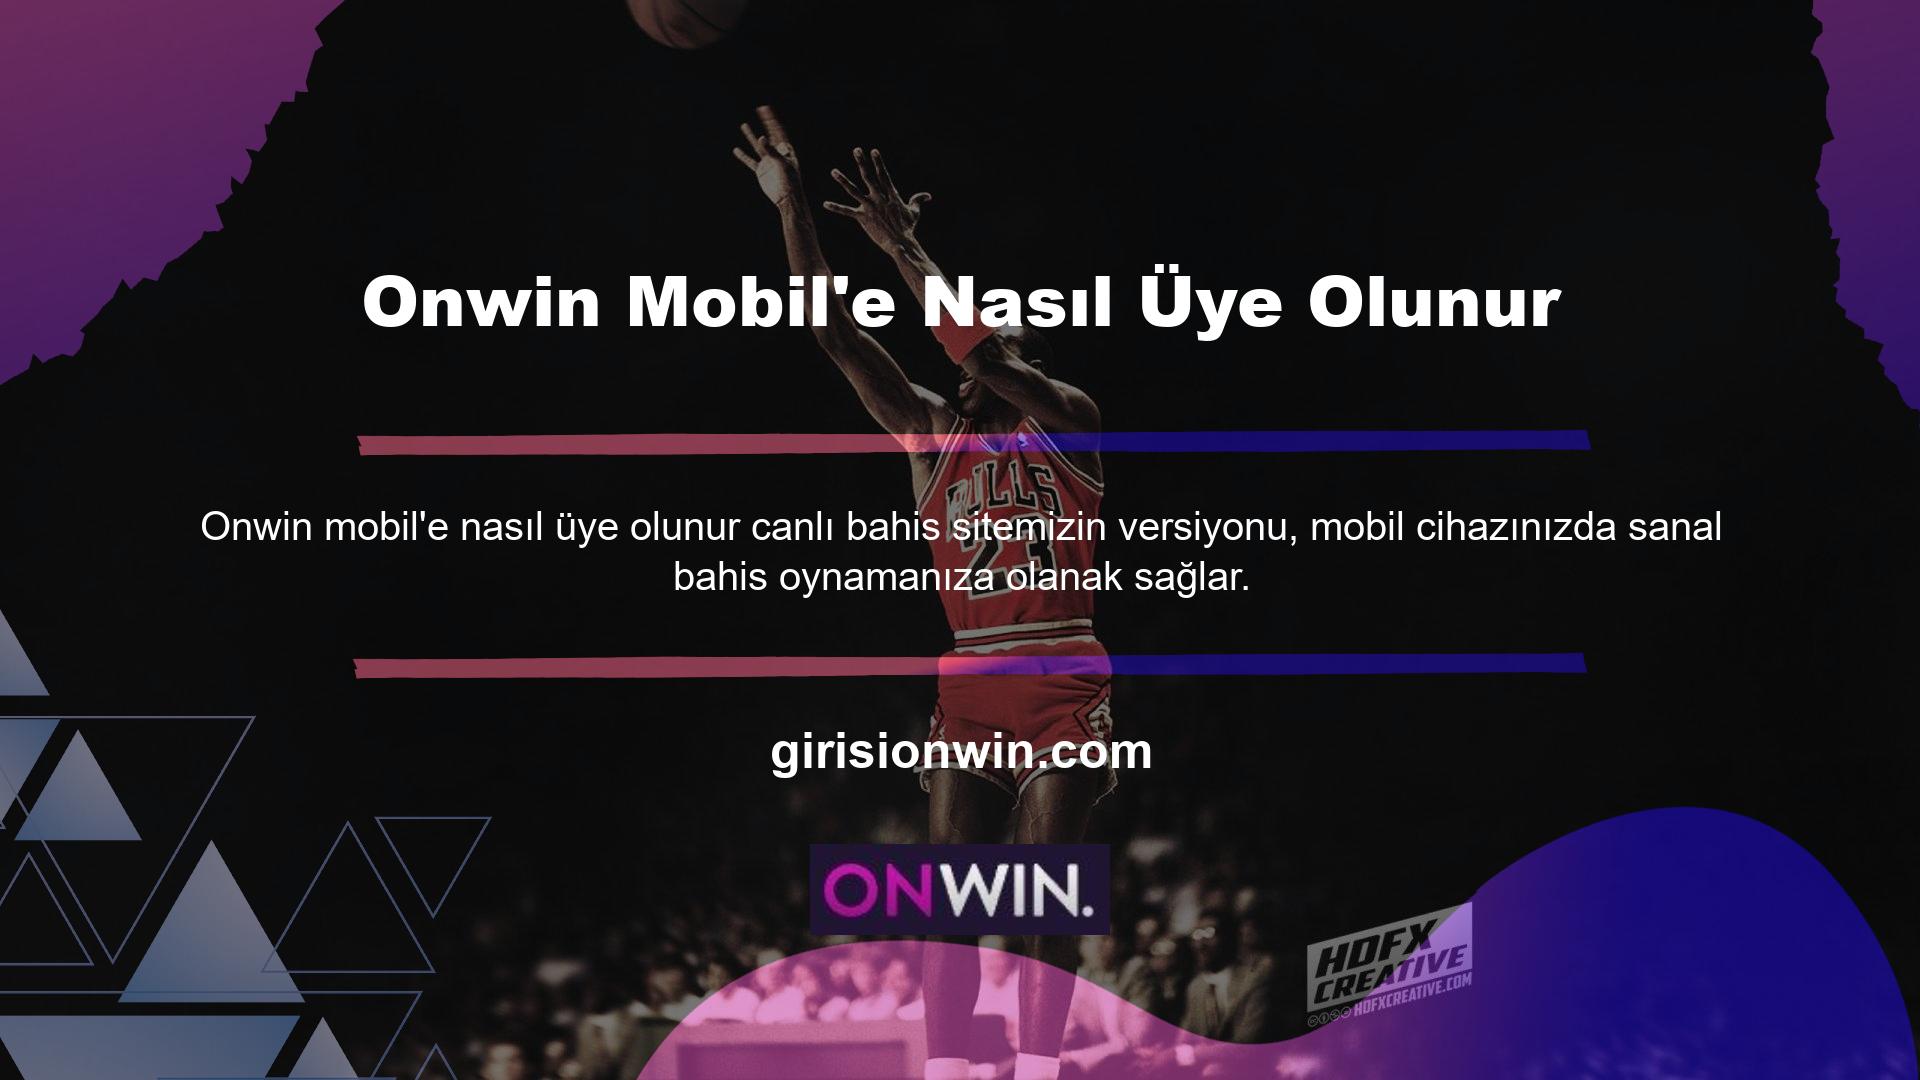 Onwin Mobile giriş yapmak için tarayıcınıza mevcut web sitesi adresini girin